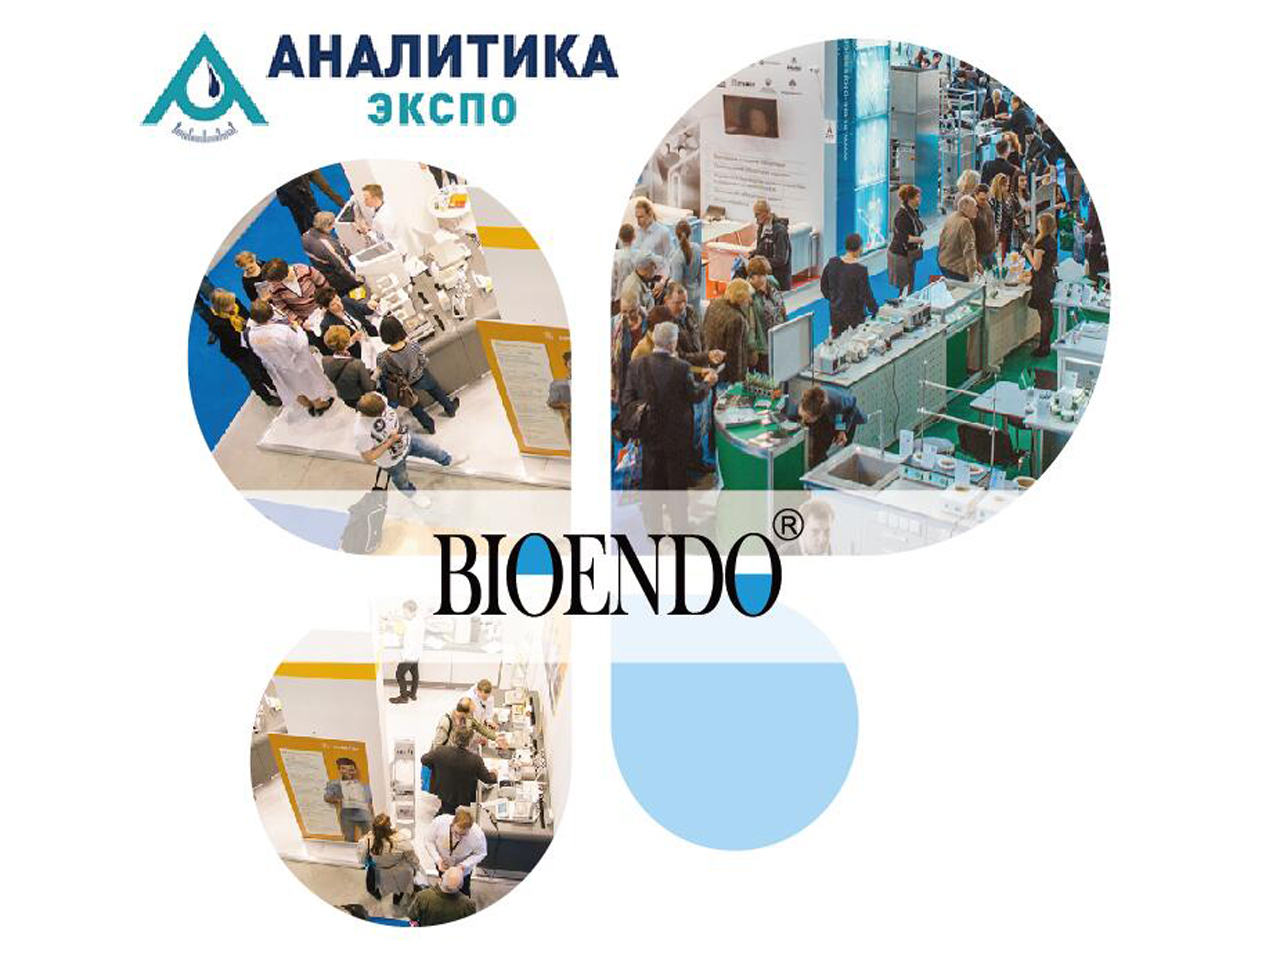 2019 ロシア、モスクワ、実験器具および化学試薬ショー